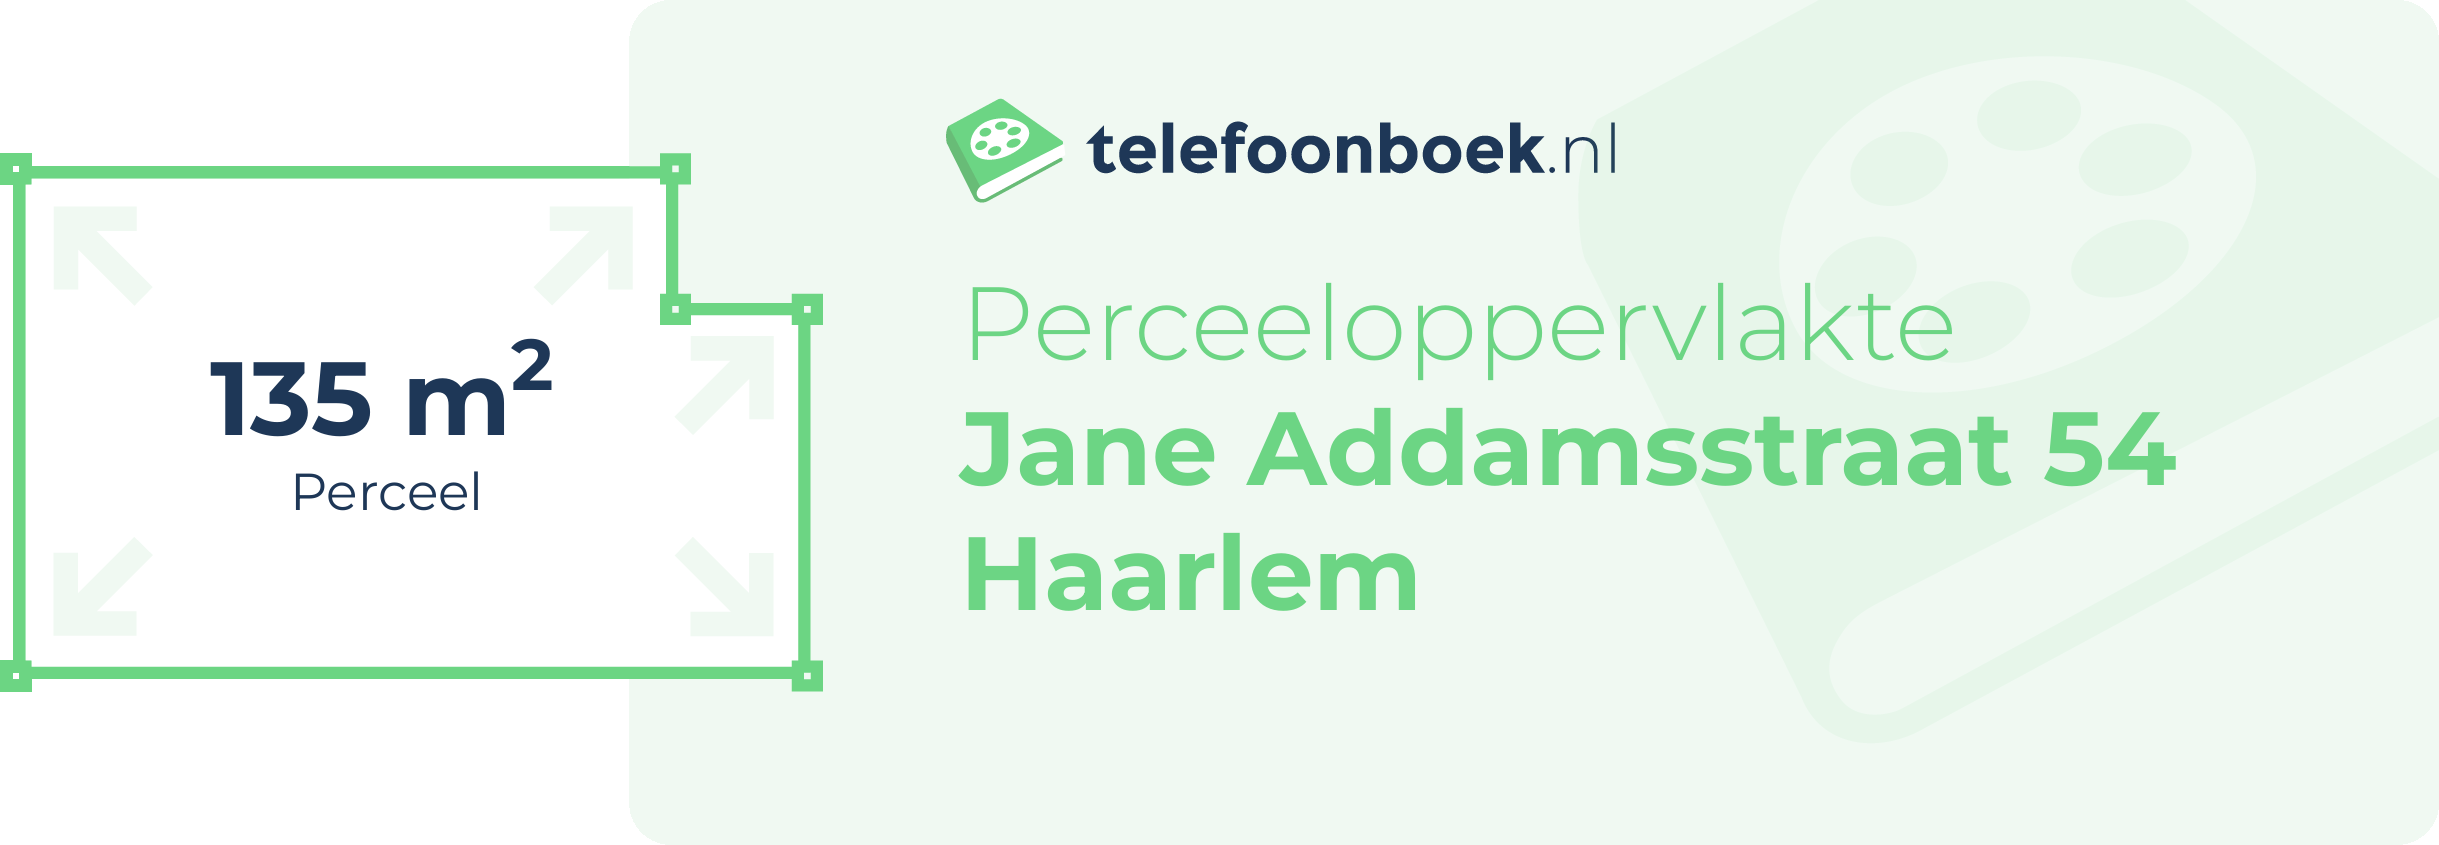 Perceeloppervlakte Jane Addamsstraat 54 Haarlem